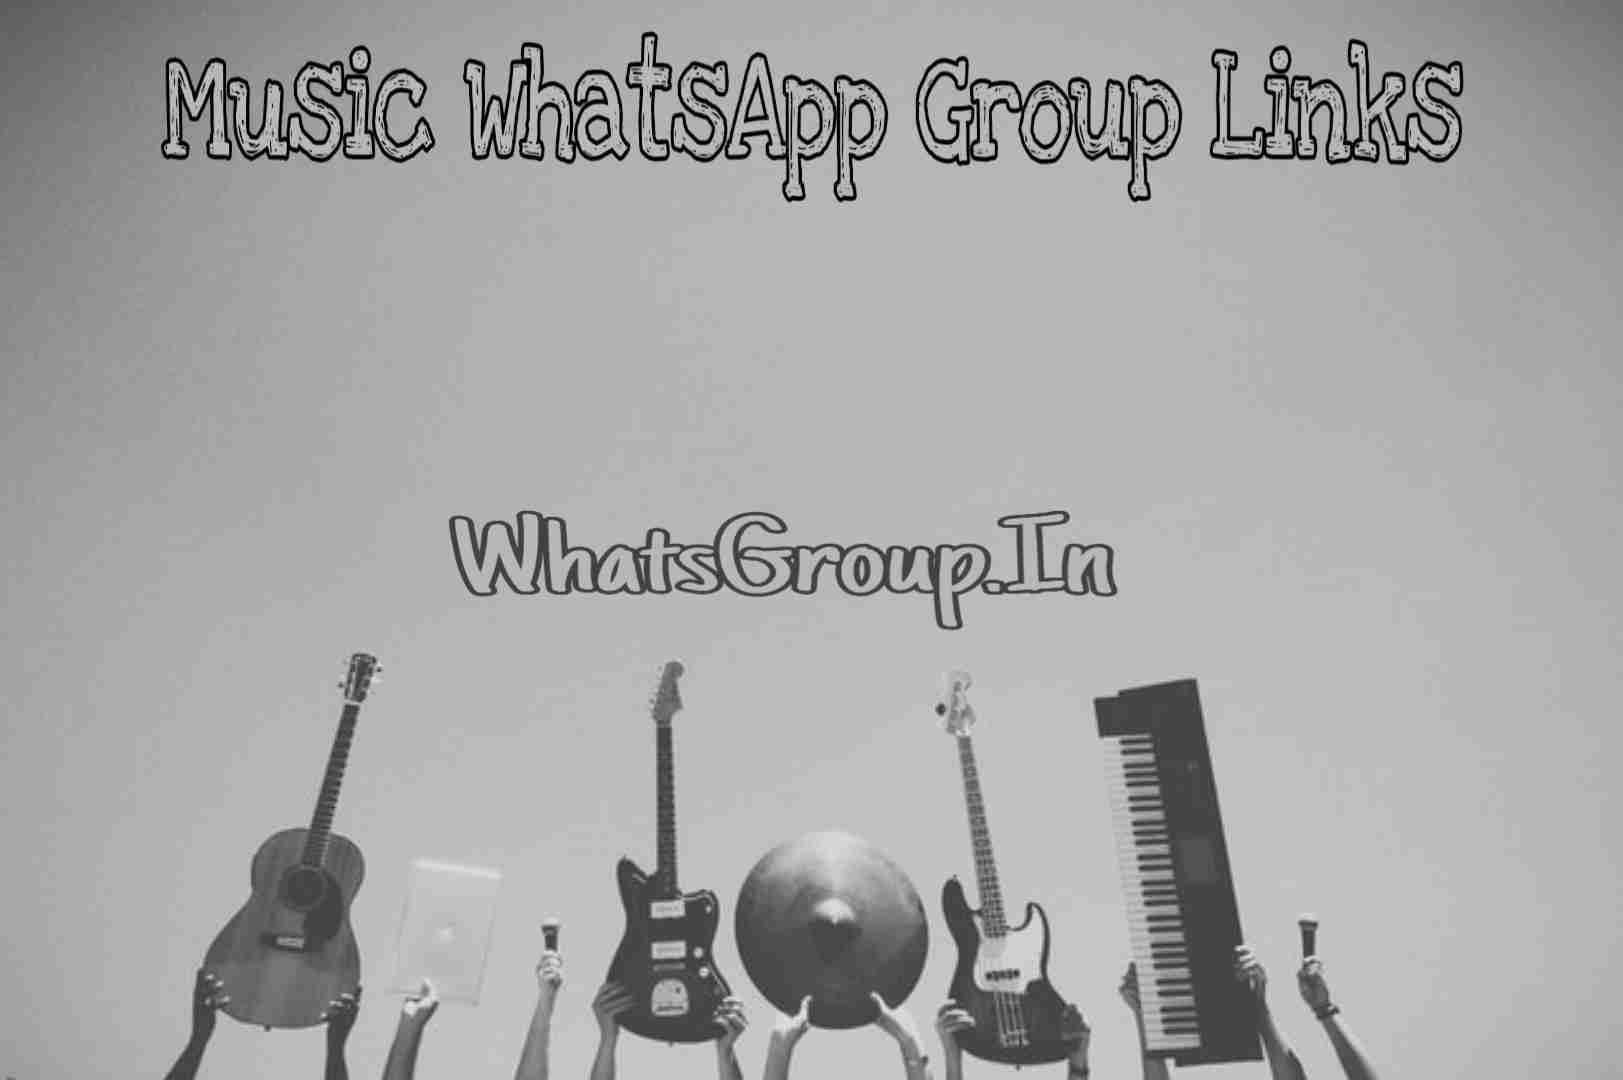 Music WhatsApp Group Links